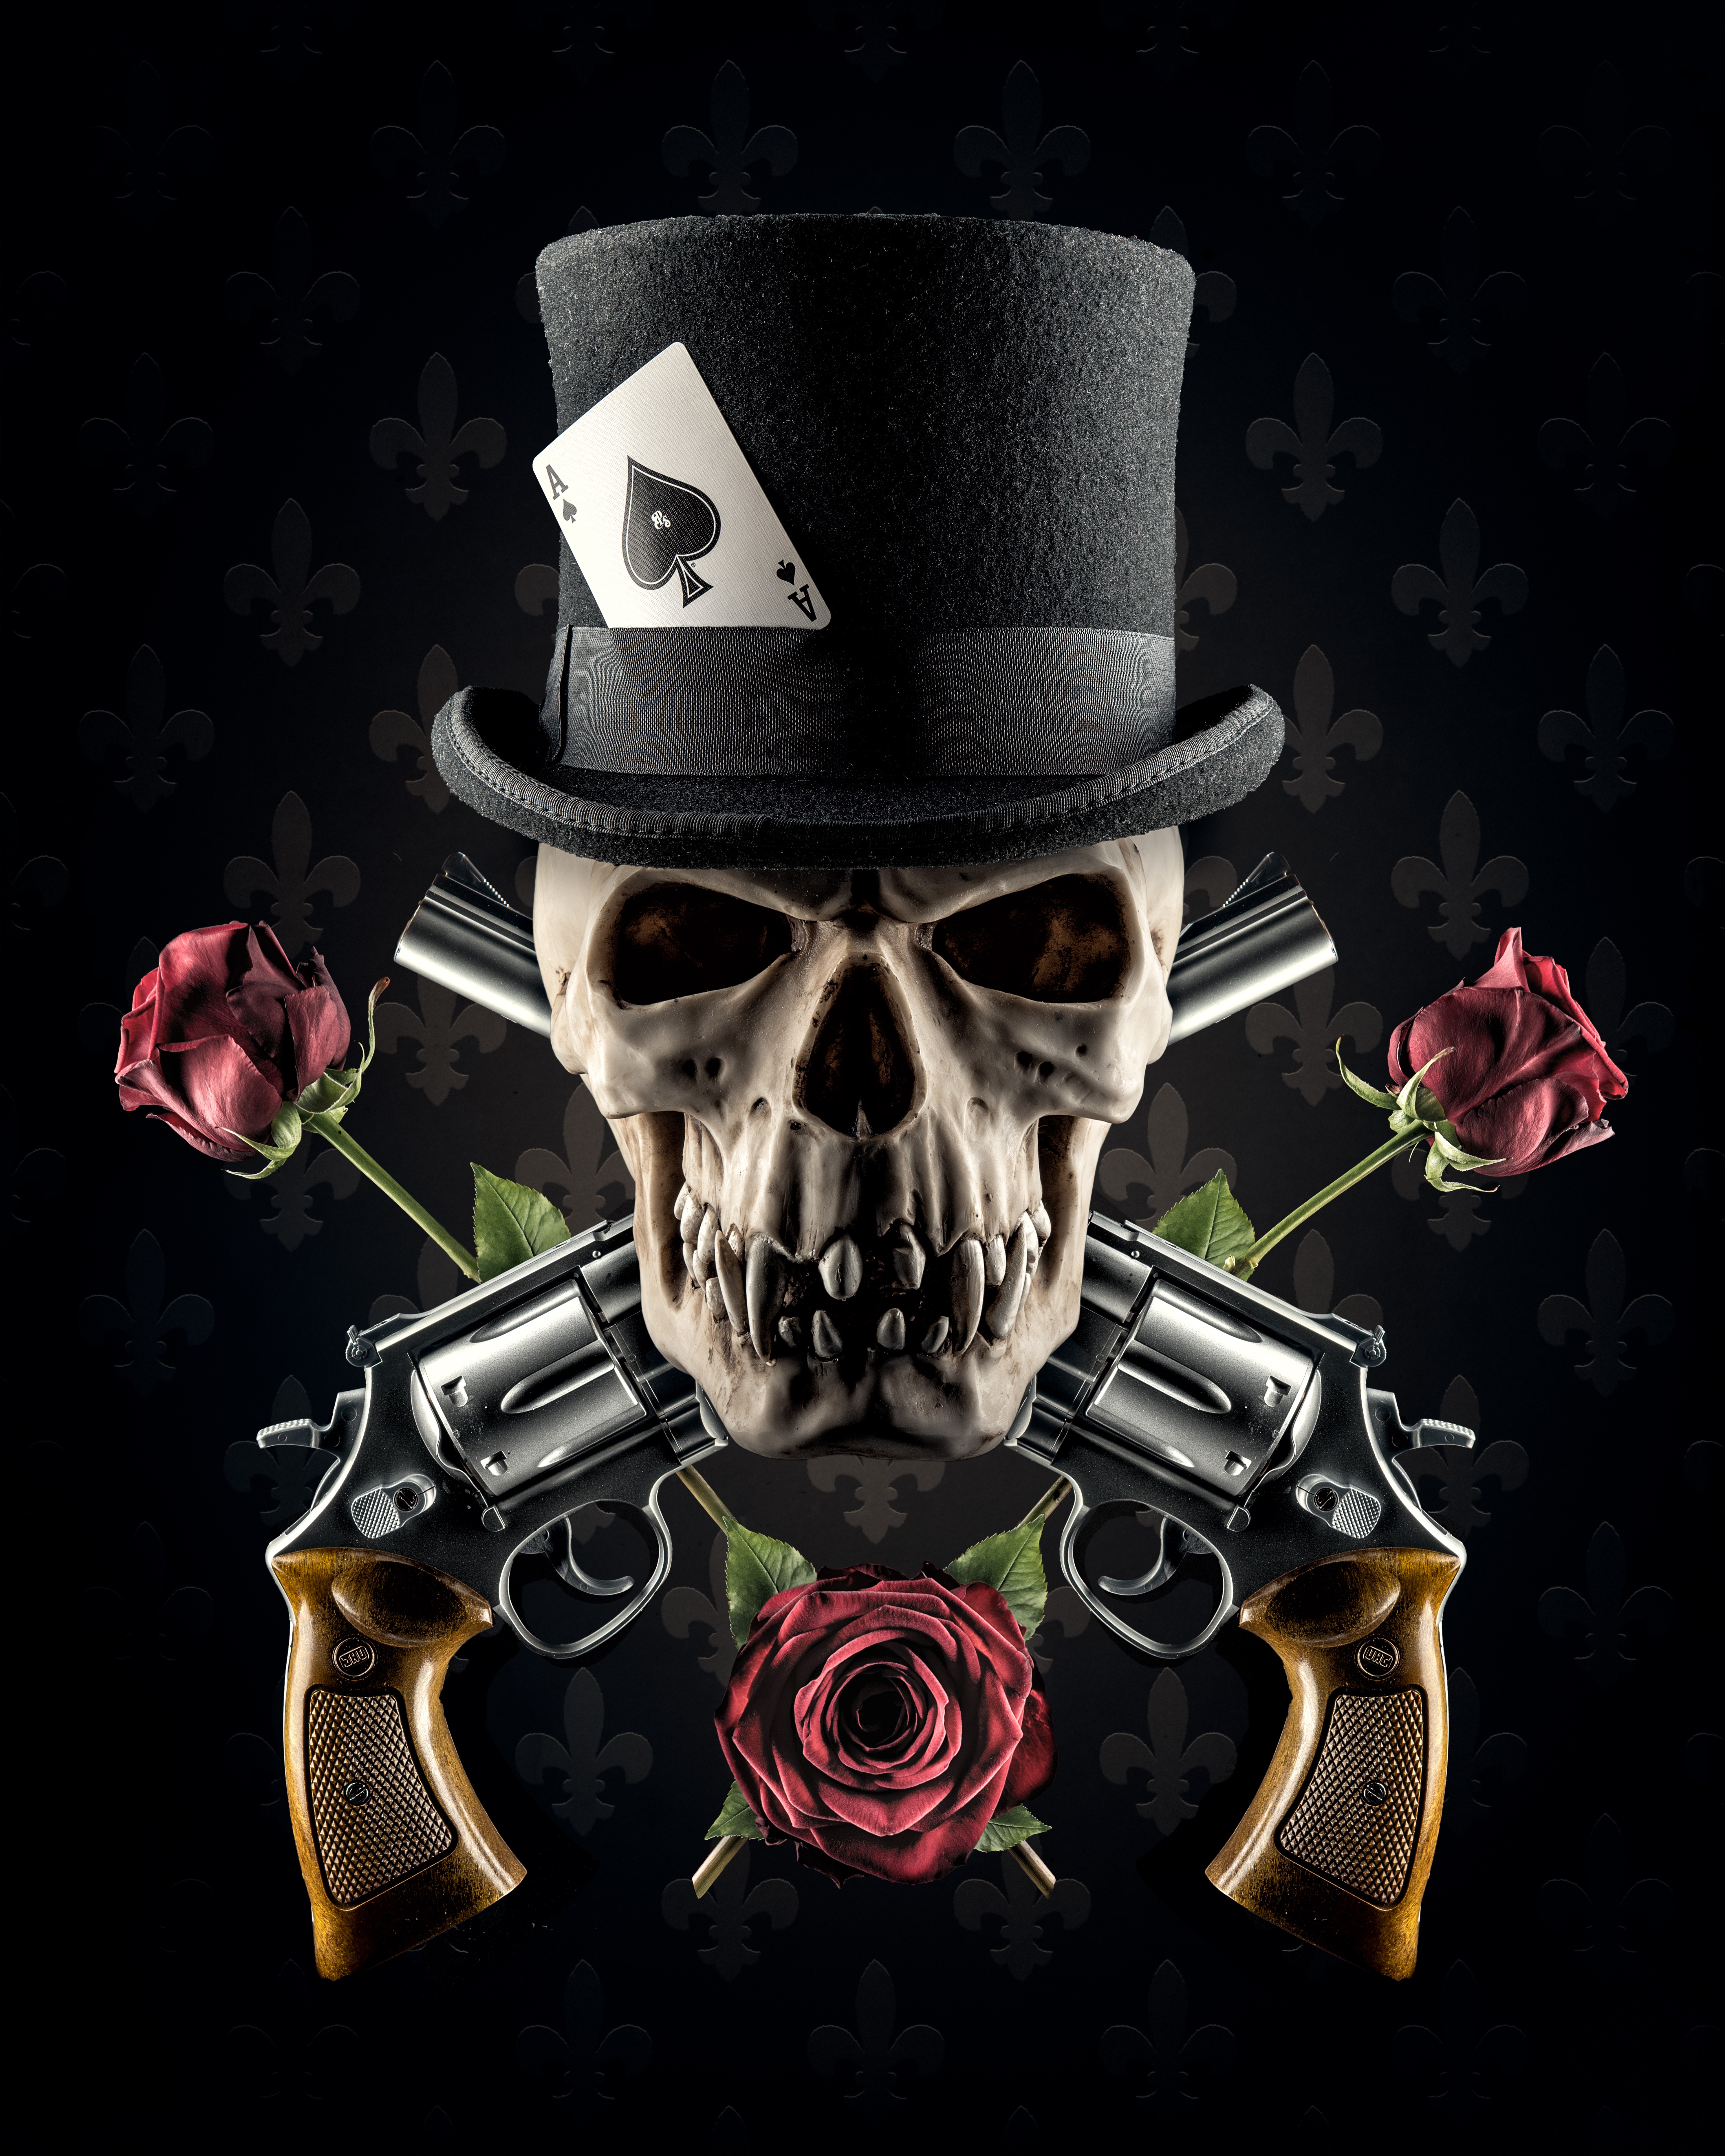 Skull Flower Smudge  Free photo on Pixabay  Pixabay